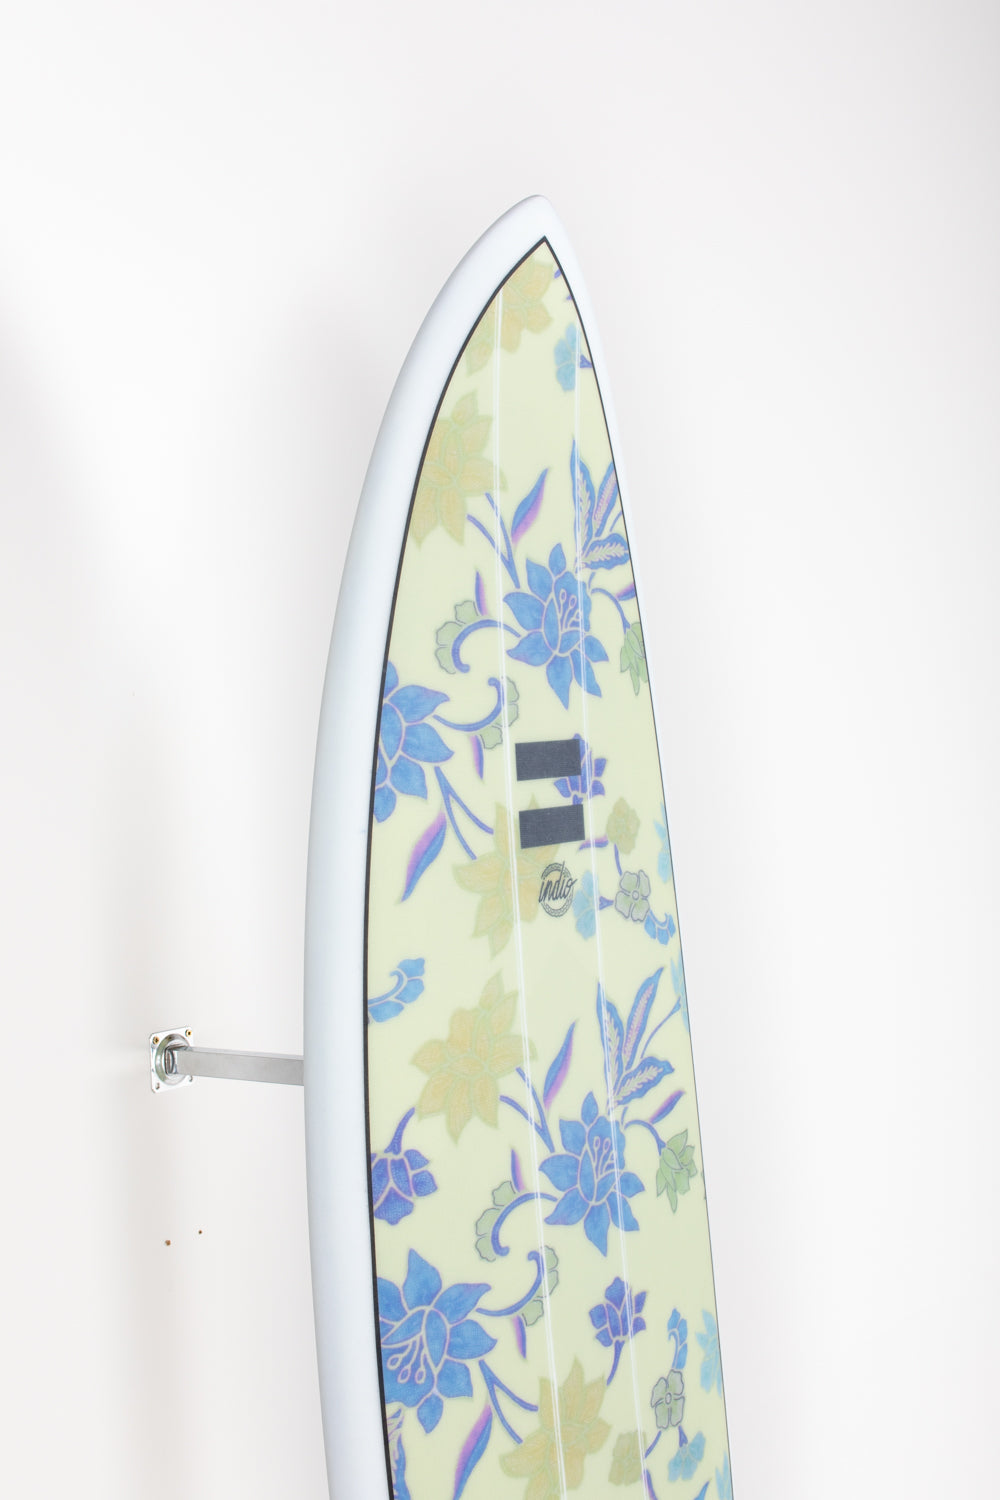 
                  
                    Pukas Surf Shop - Indio Endurance - THE EGG Flowers - 6´8 x 21 1/2 x 2 3/4 - 46L
                  
                